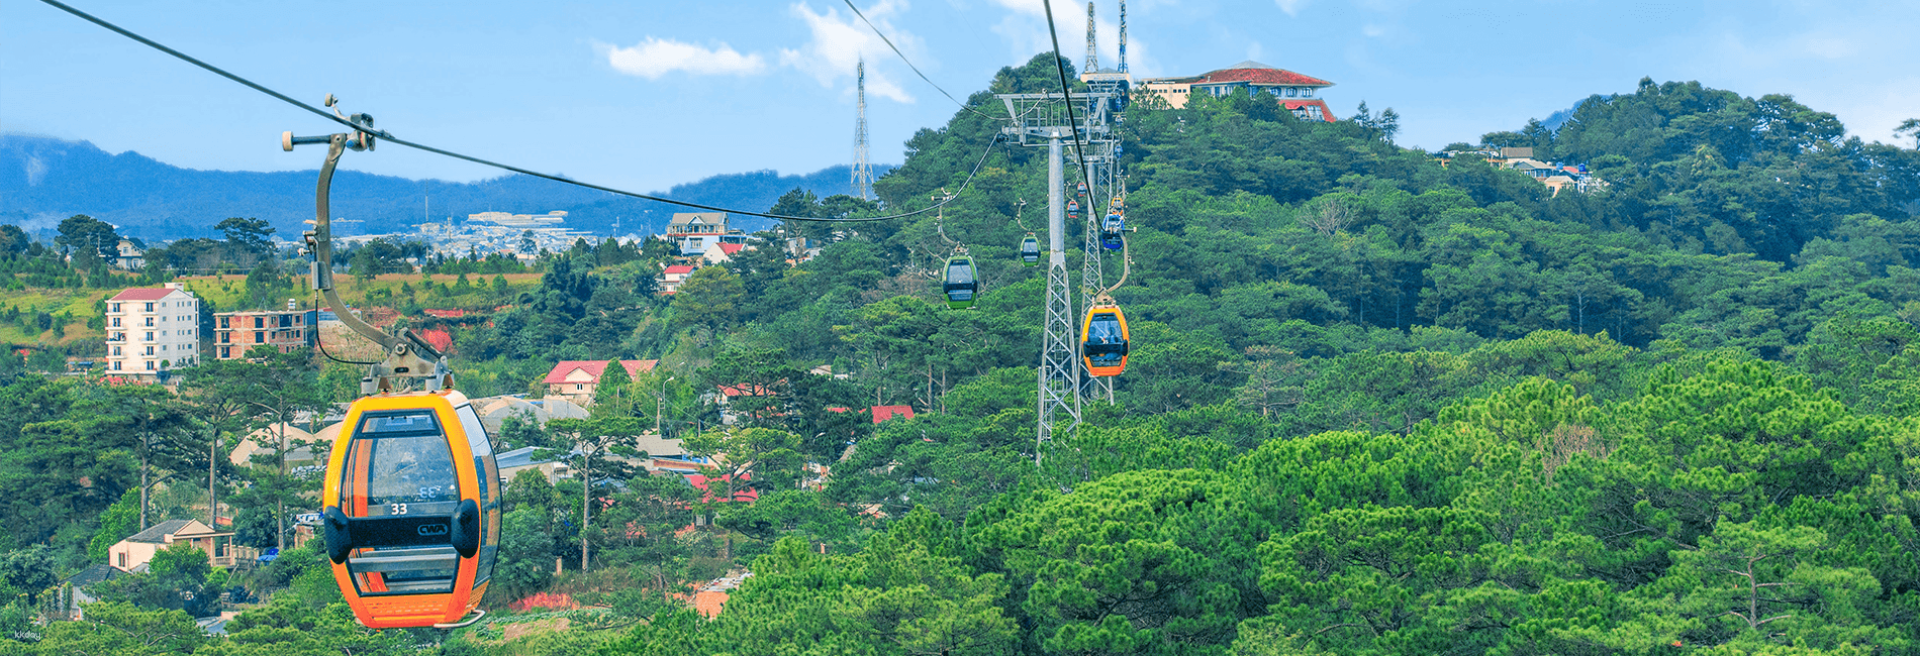 越南-大叻羅賓山 Robin Hill 纜車體驗